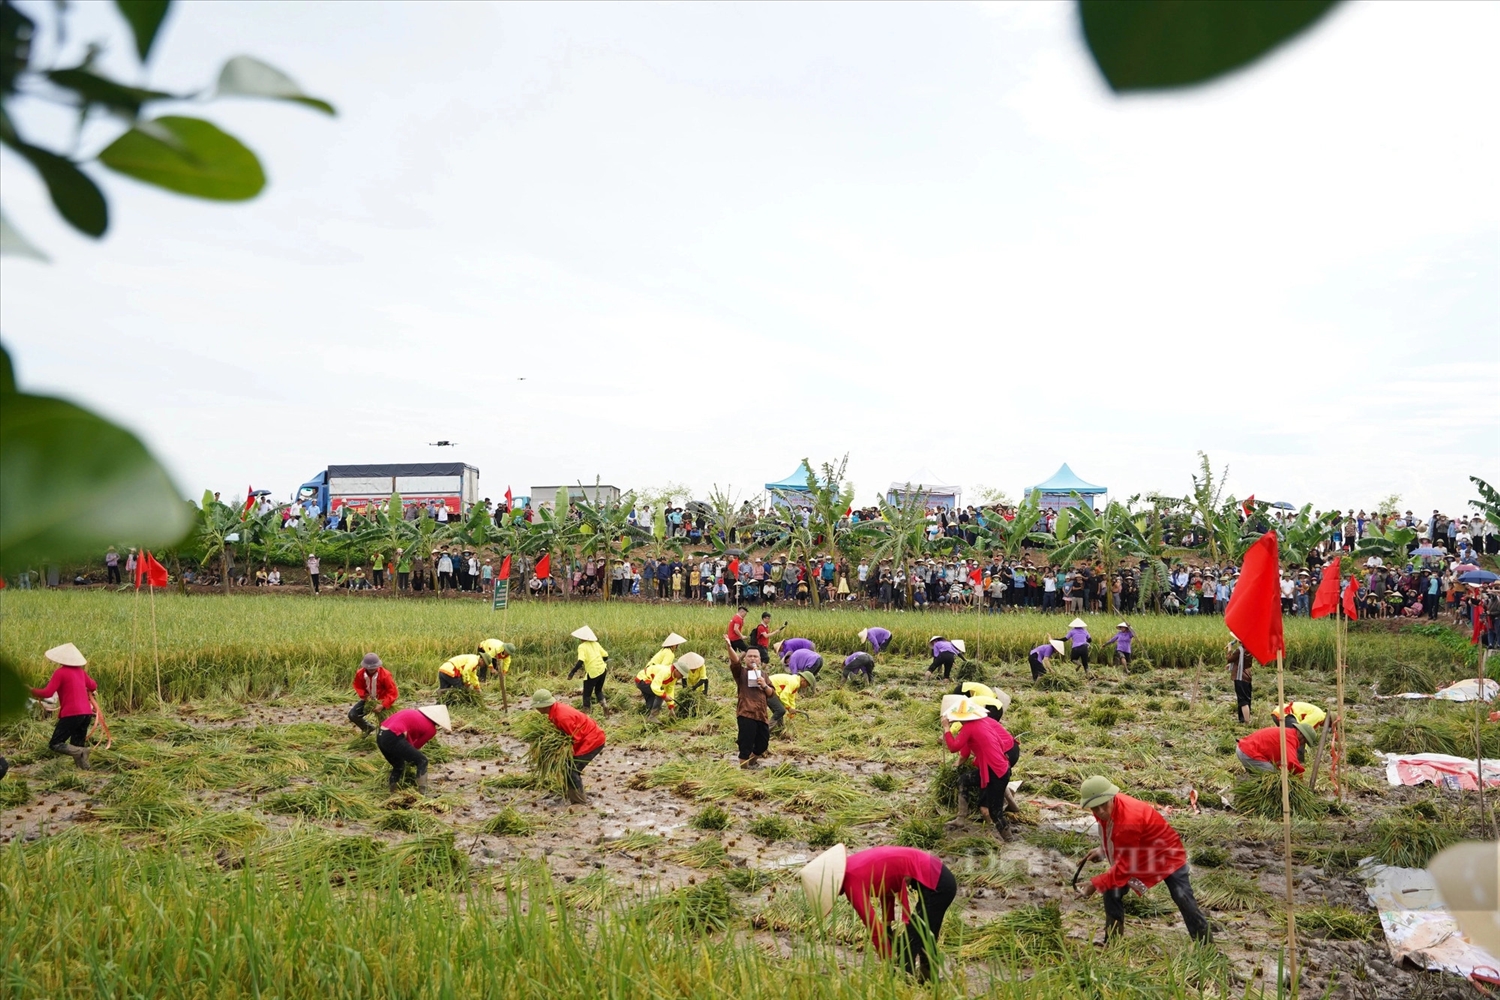 Hội thi gặt lúa thu hút đông đảo người dân và du khách thập phương đến xem, trải nghiệm